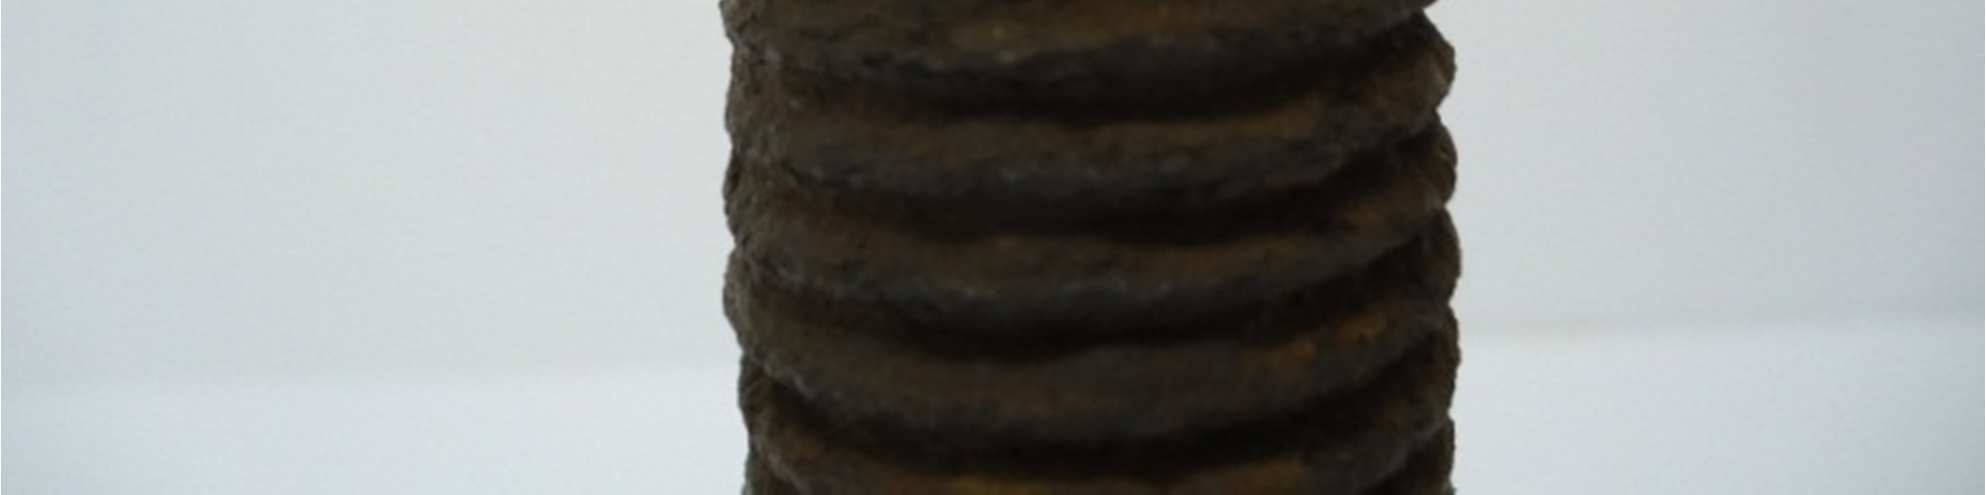 FIGURA 18 Parafuso LOC03: filetes de rosca parcialmente preenchidos com uma mistura de graxa e pós.